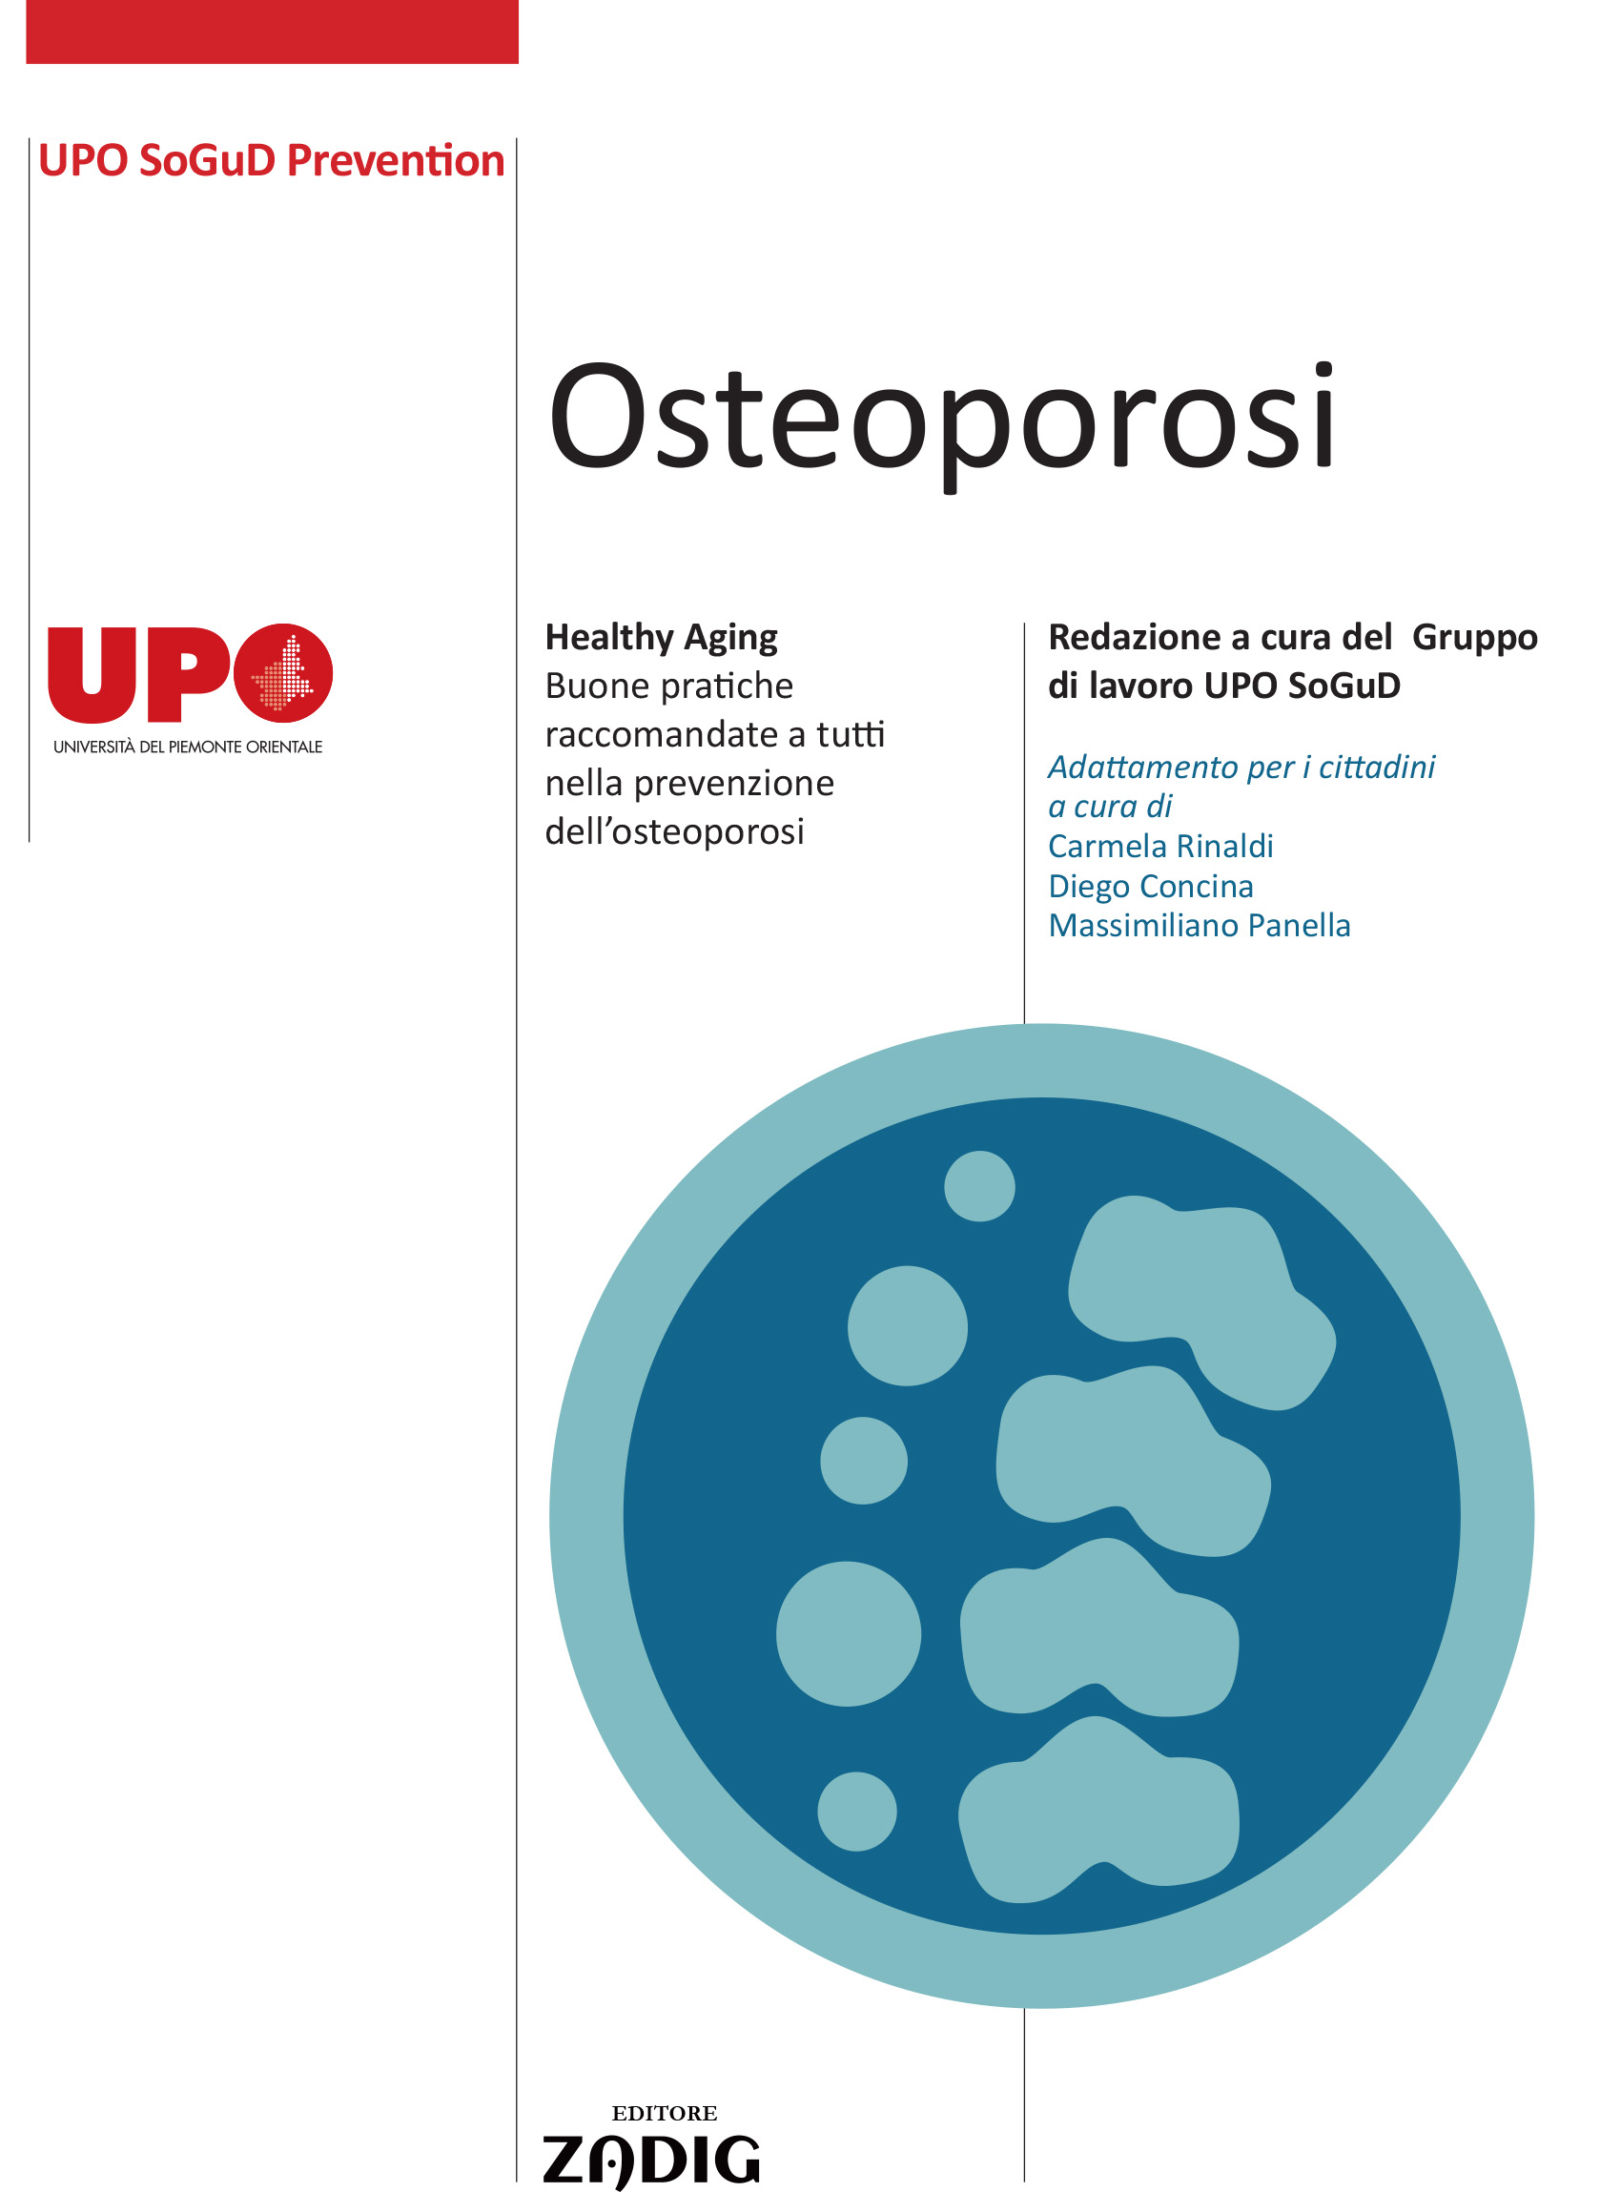 Osteoporosi prevenzione per i cittadini - Aging Project